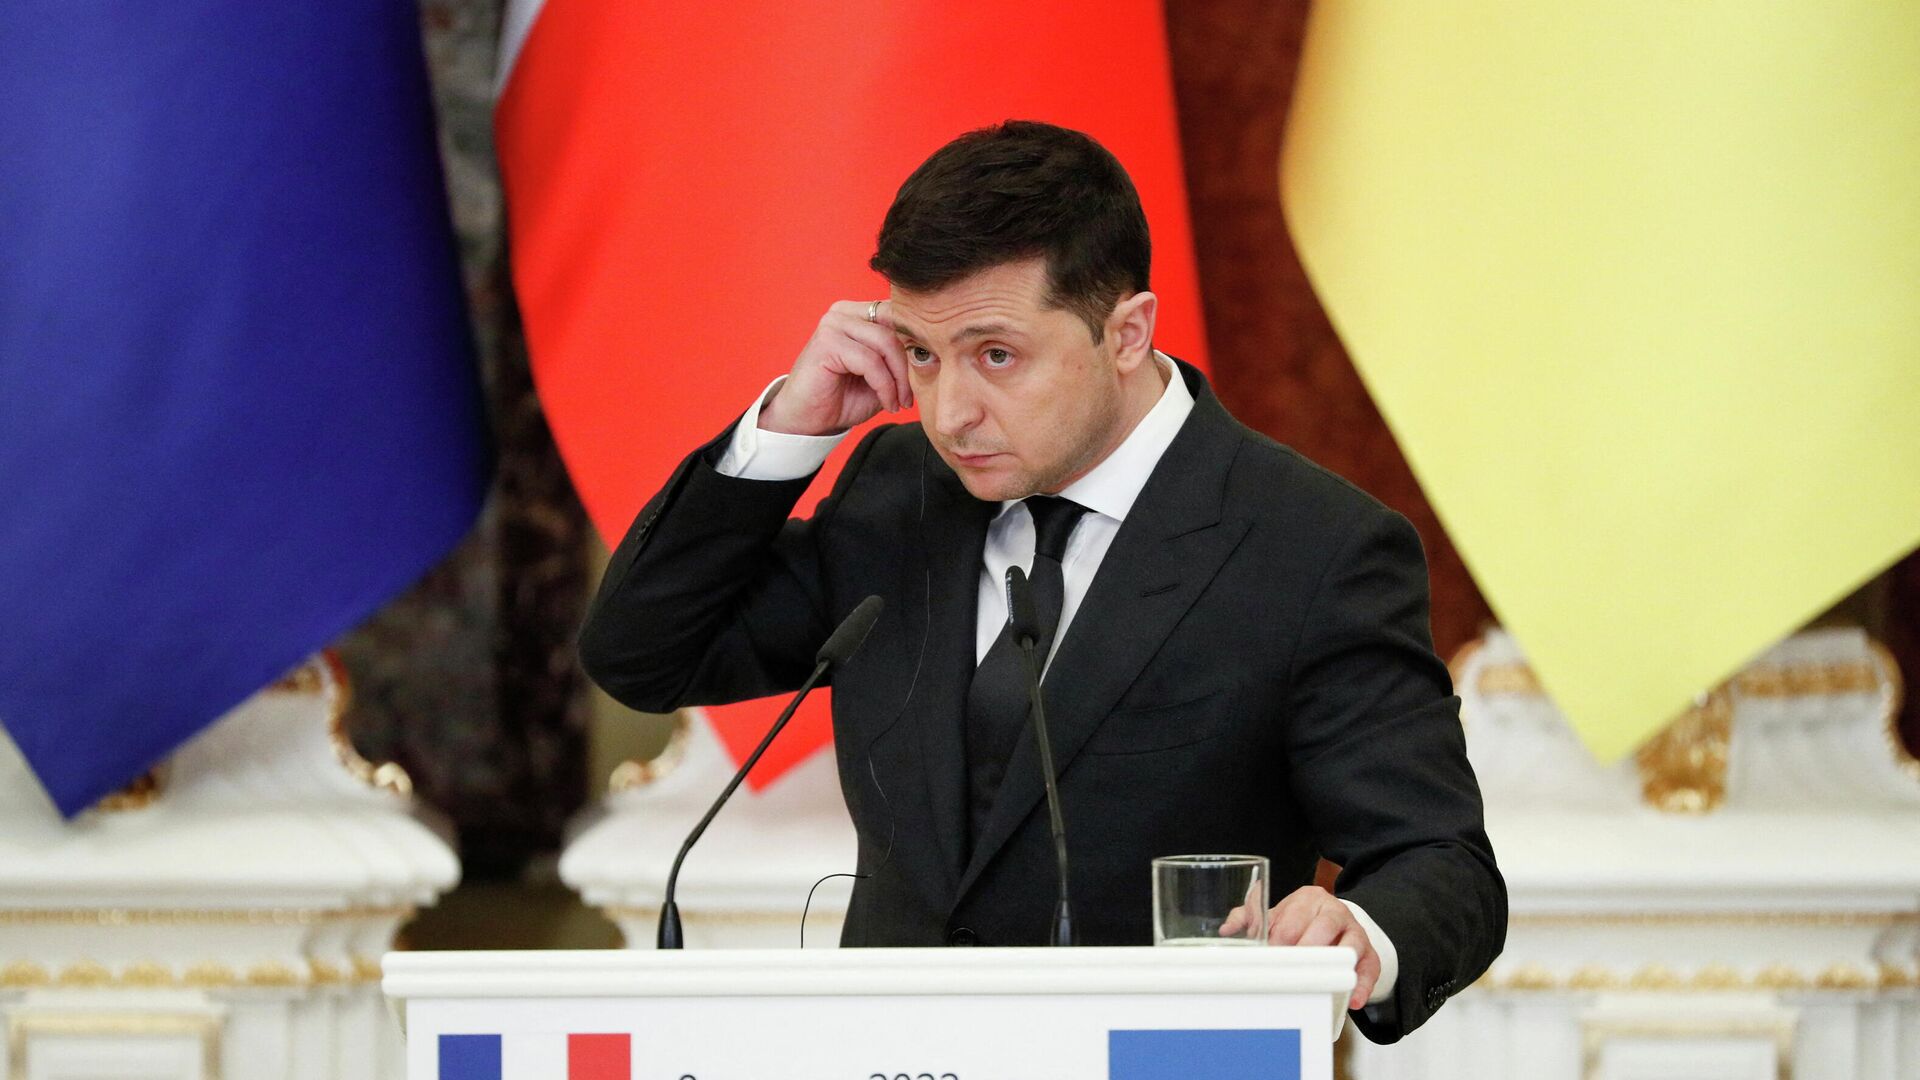 Запад хочет более отчаянного президента для Украины, заявил эксперт